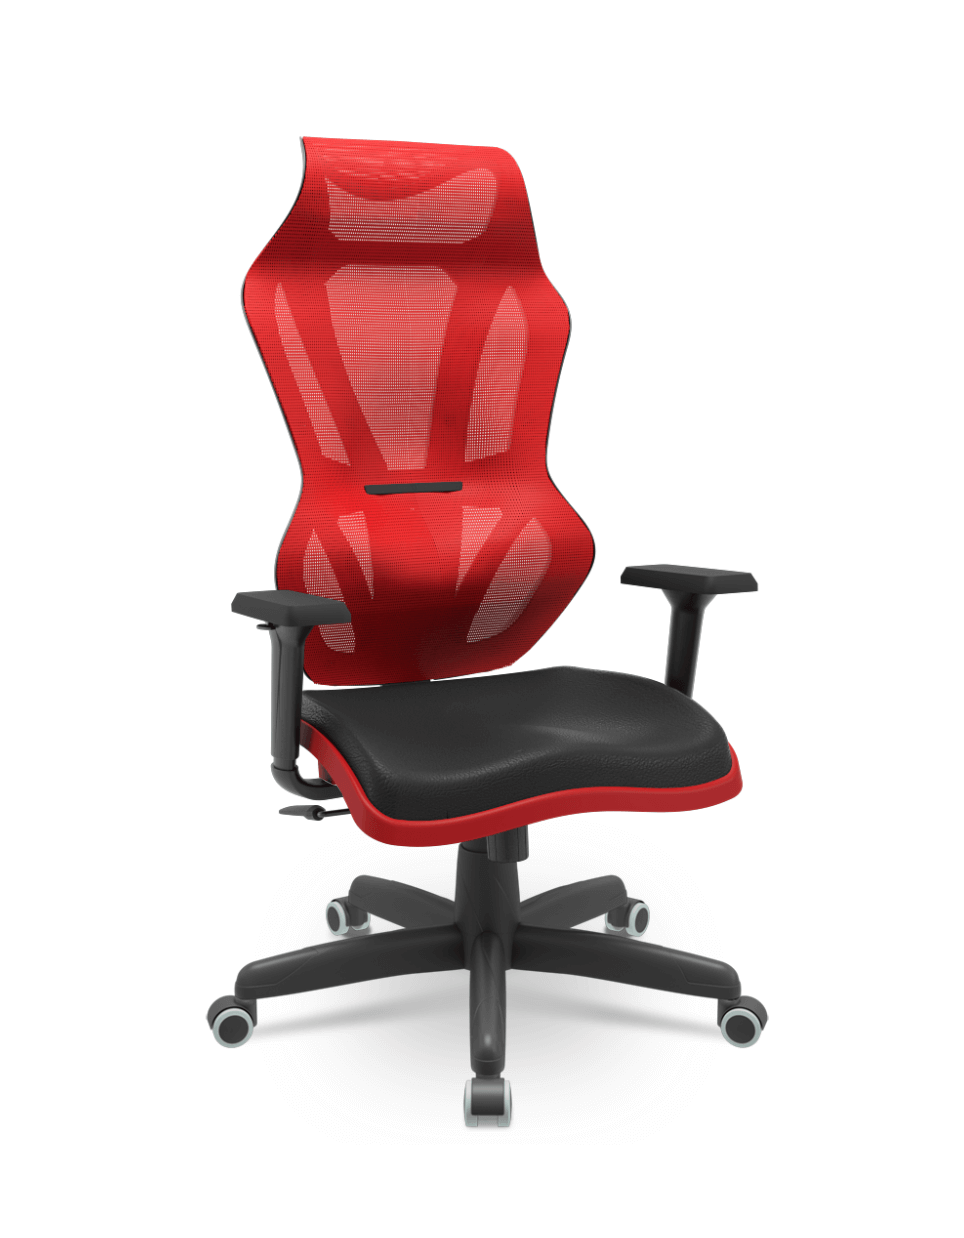 Capa de Cadeira Gamer Vizon DZ Preta e Vermelha com Tela Square T63 Vermelho Base Standard RDZ 50 RPU Braço 3D Shift PP